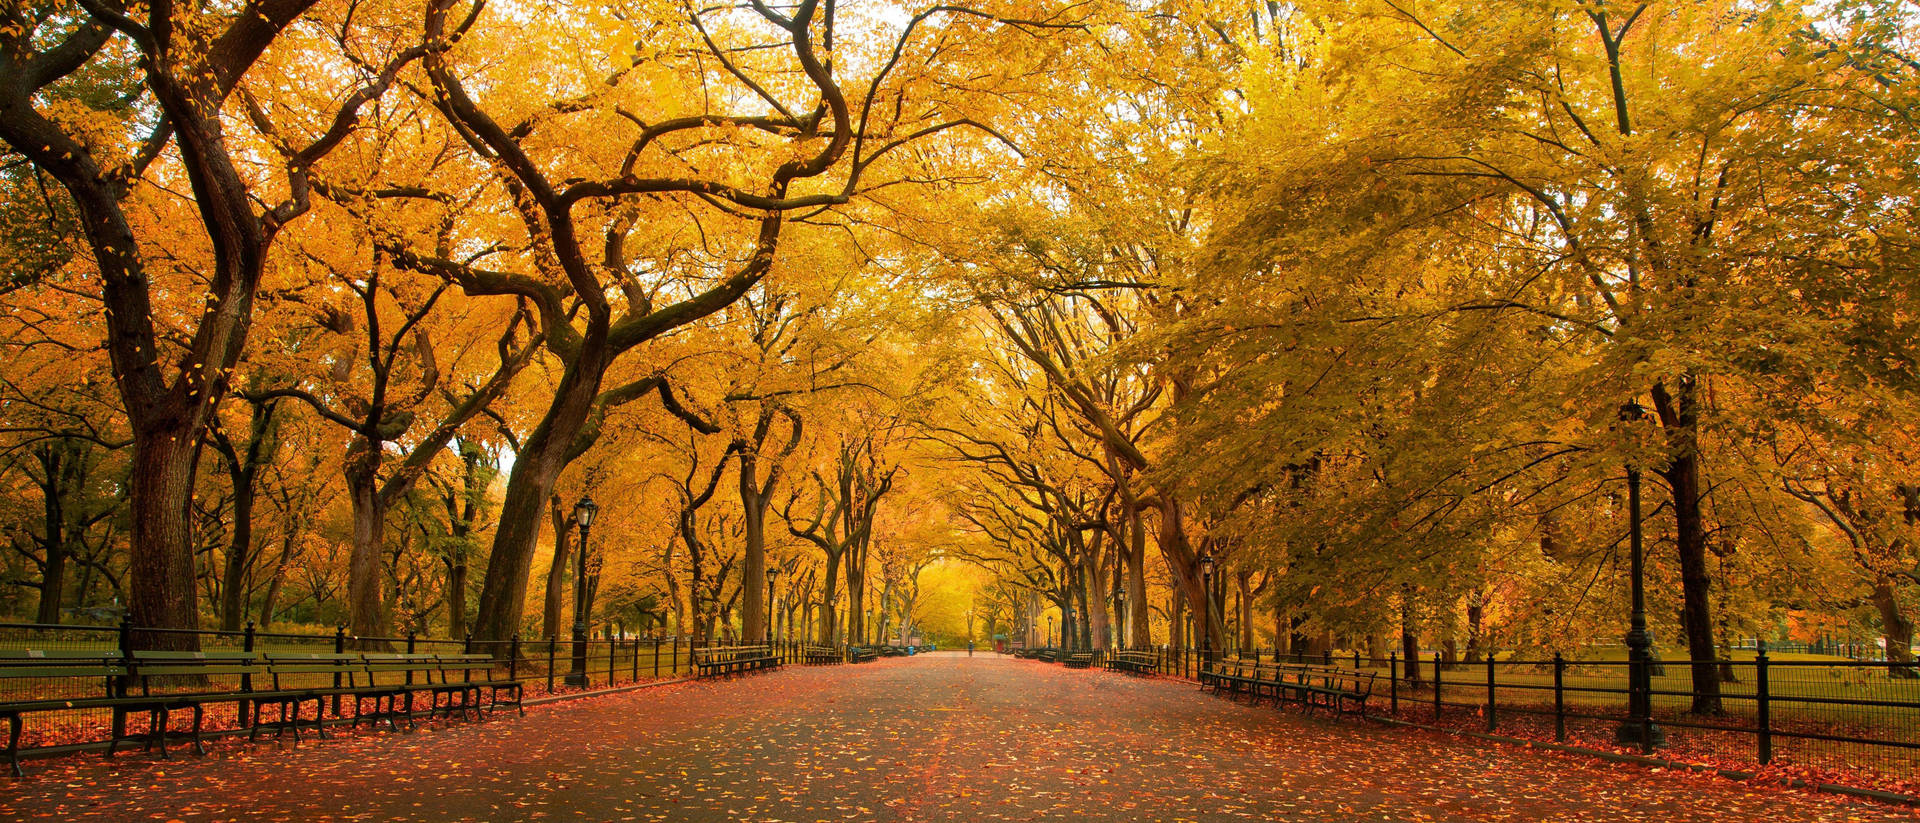 Central Park Fall 4k Ultra Widescreen Wallpaper